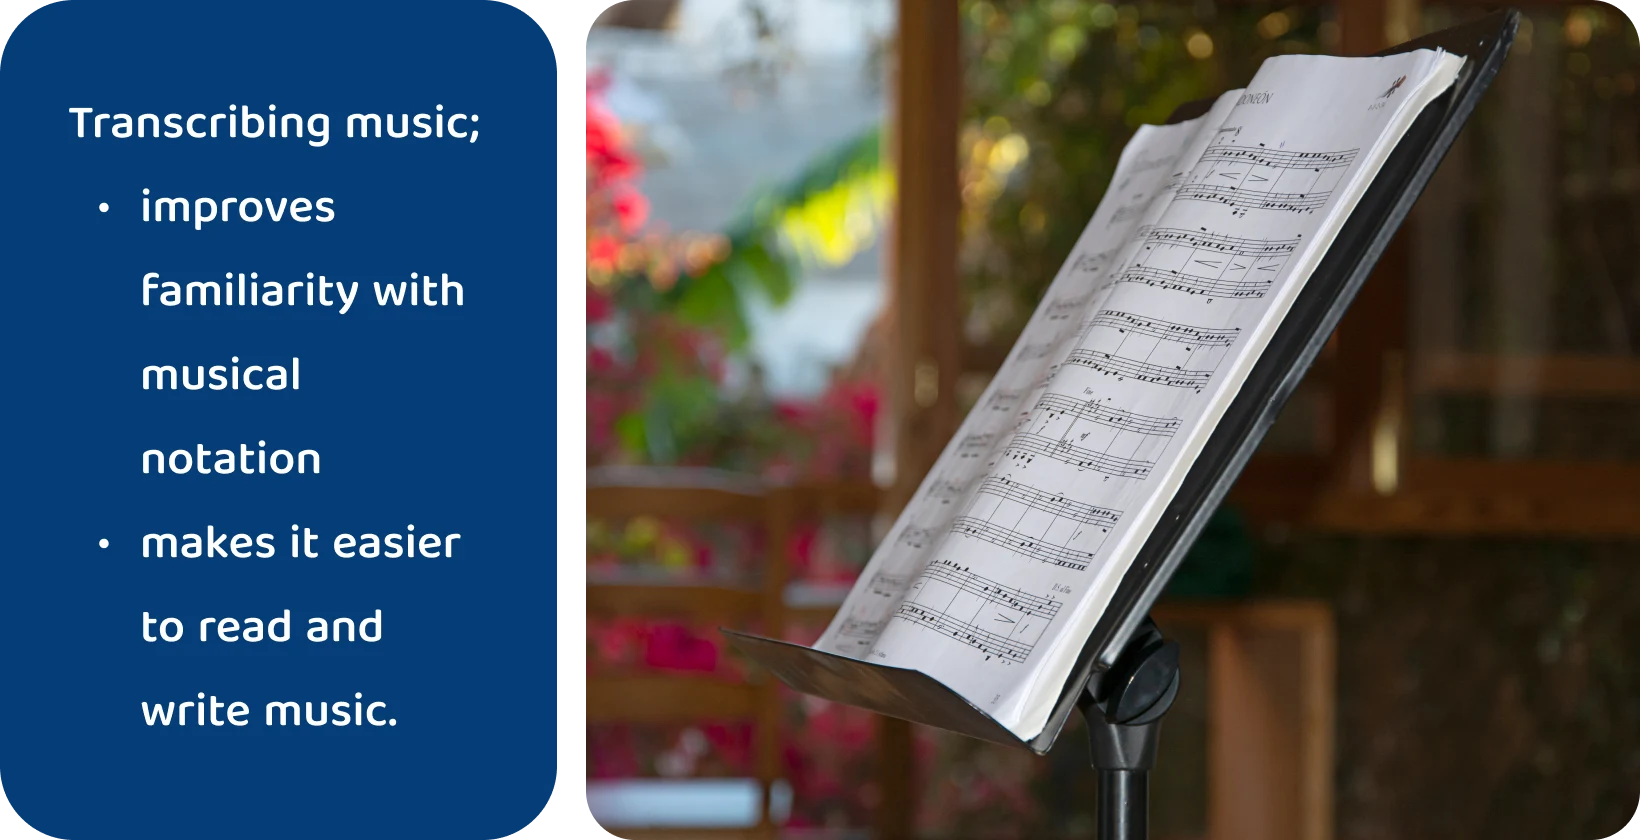 Partituri pe un suport cu fundal natural neclar, subliniind beneficiile transcrierii muzicii pentru alfabetizarea muzicală.